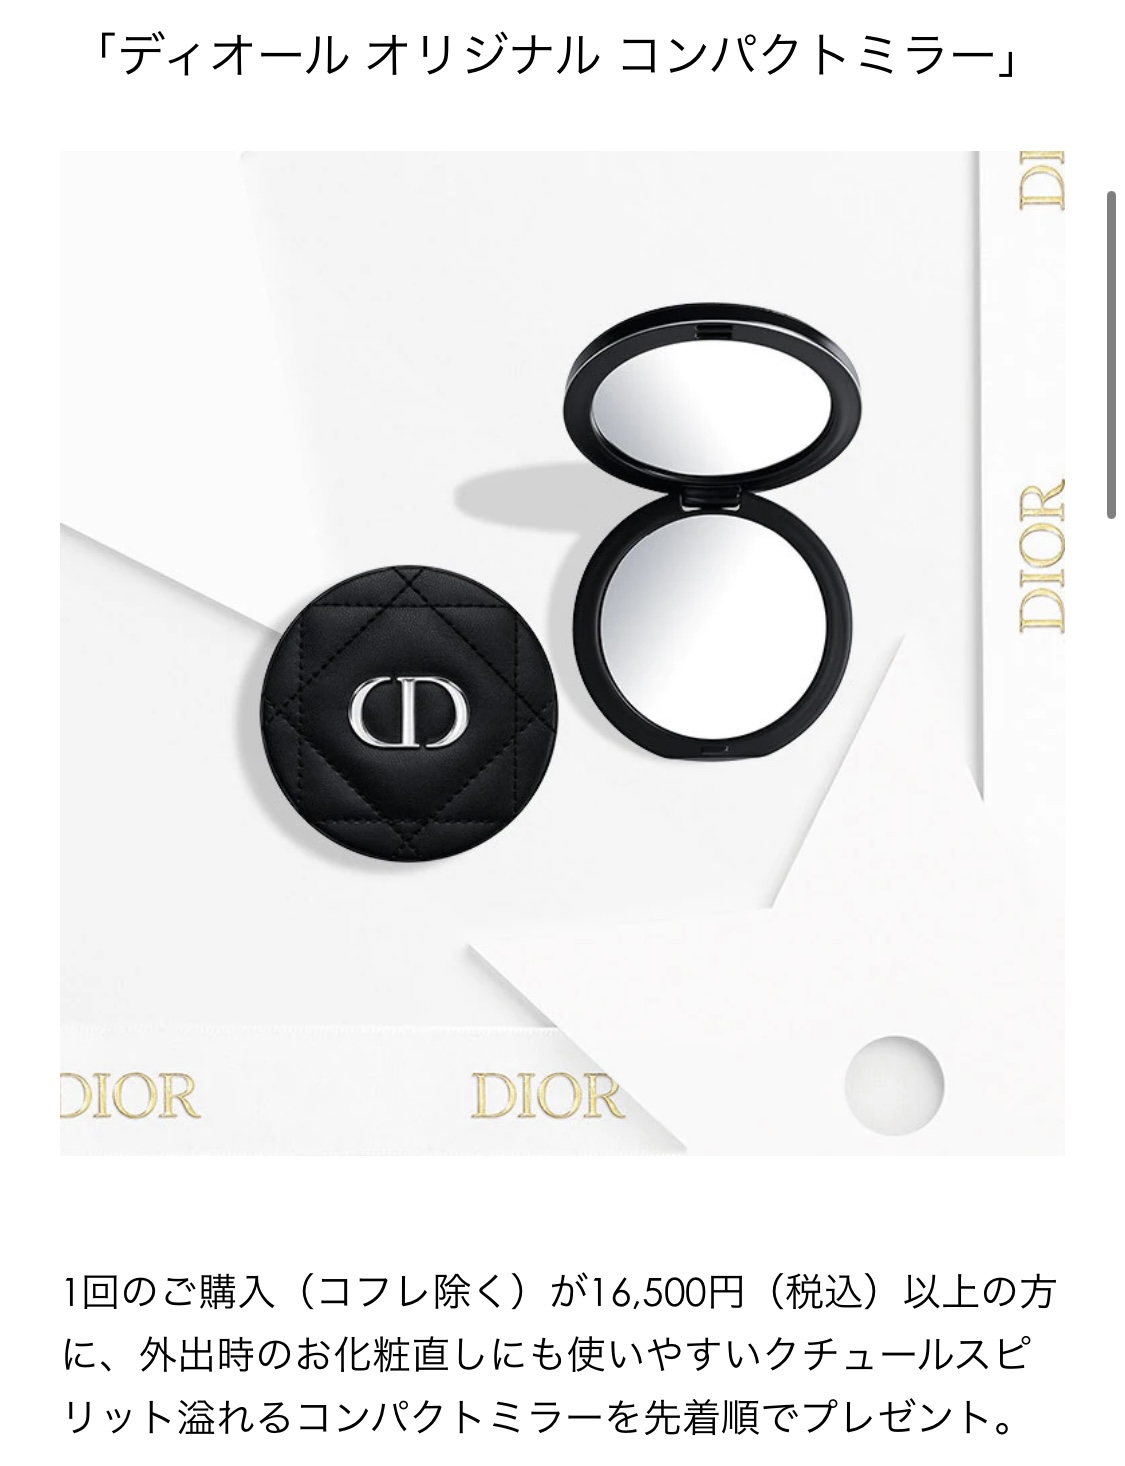 新商品!新型 Dior コンパクトミラー drenriquejmariani.com